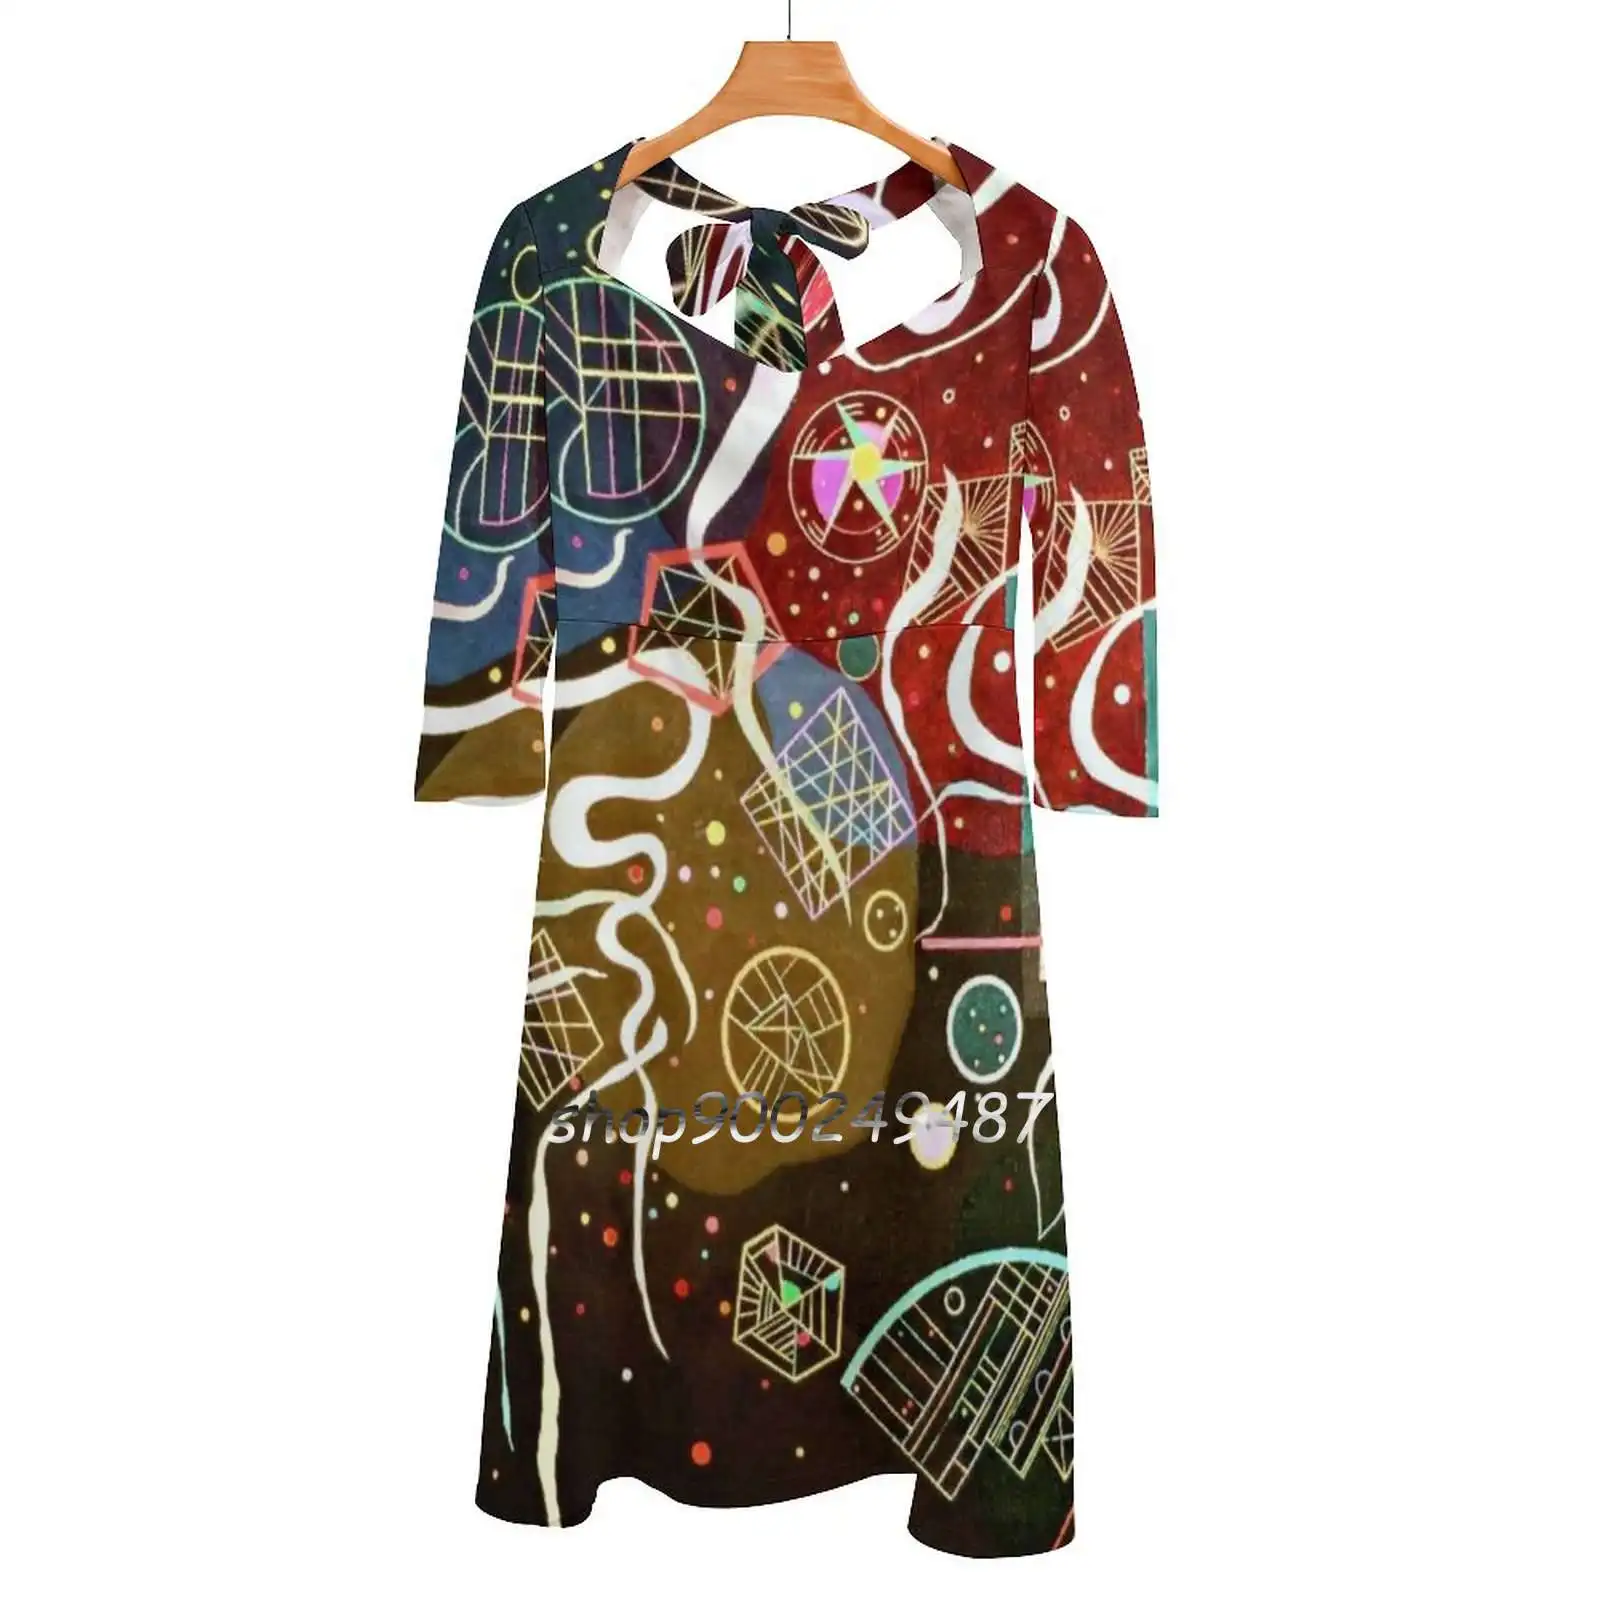 

Платье-клеш Kandinsky с узлом сердечком, модное свободное платье большого размера с абстрактным рисунком